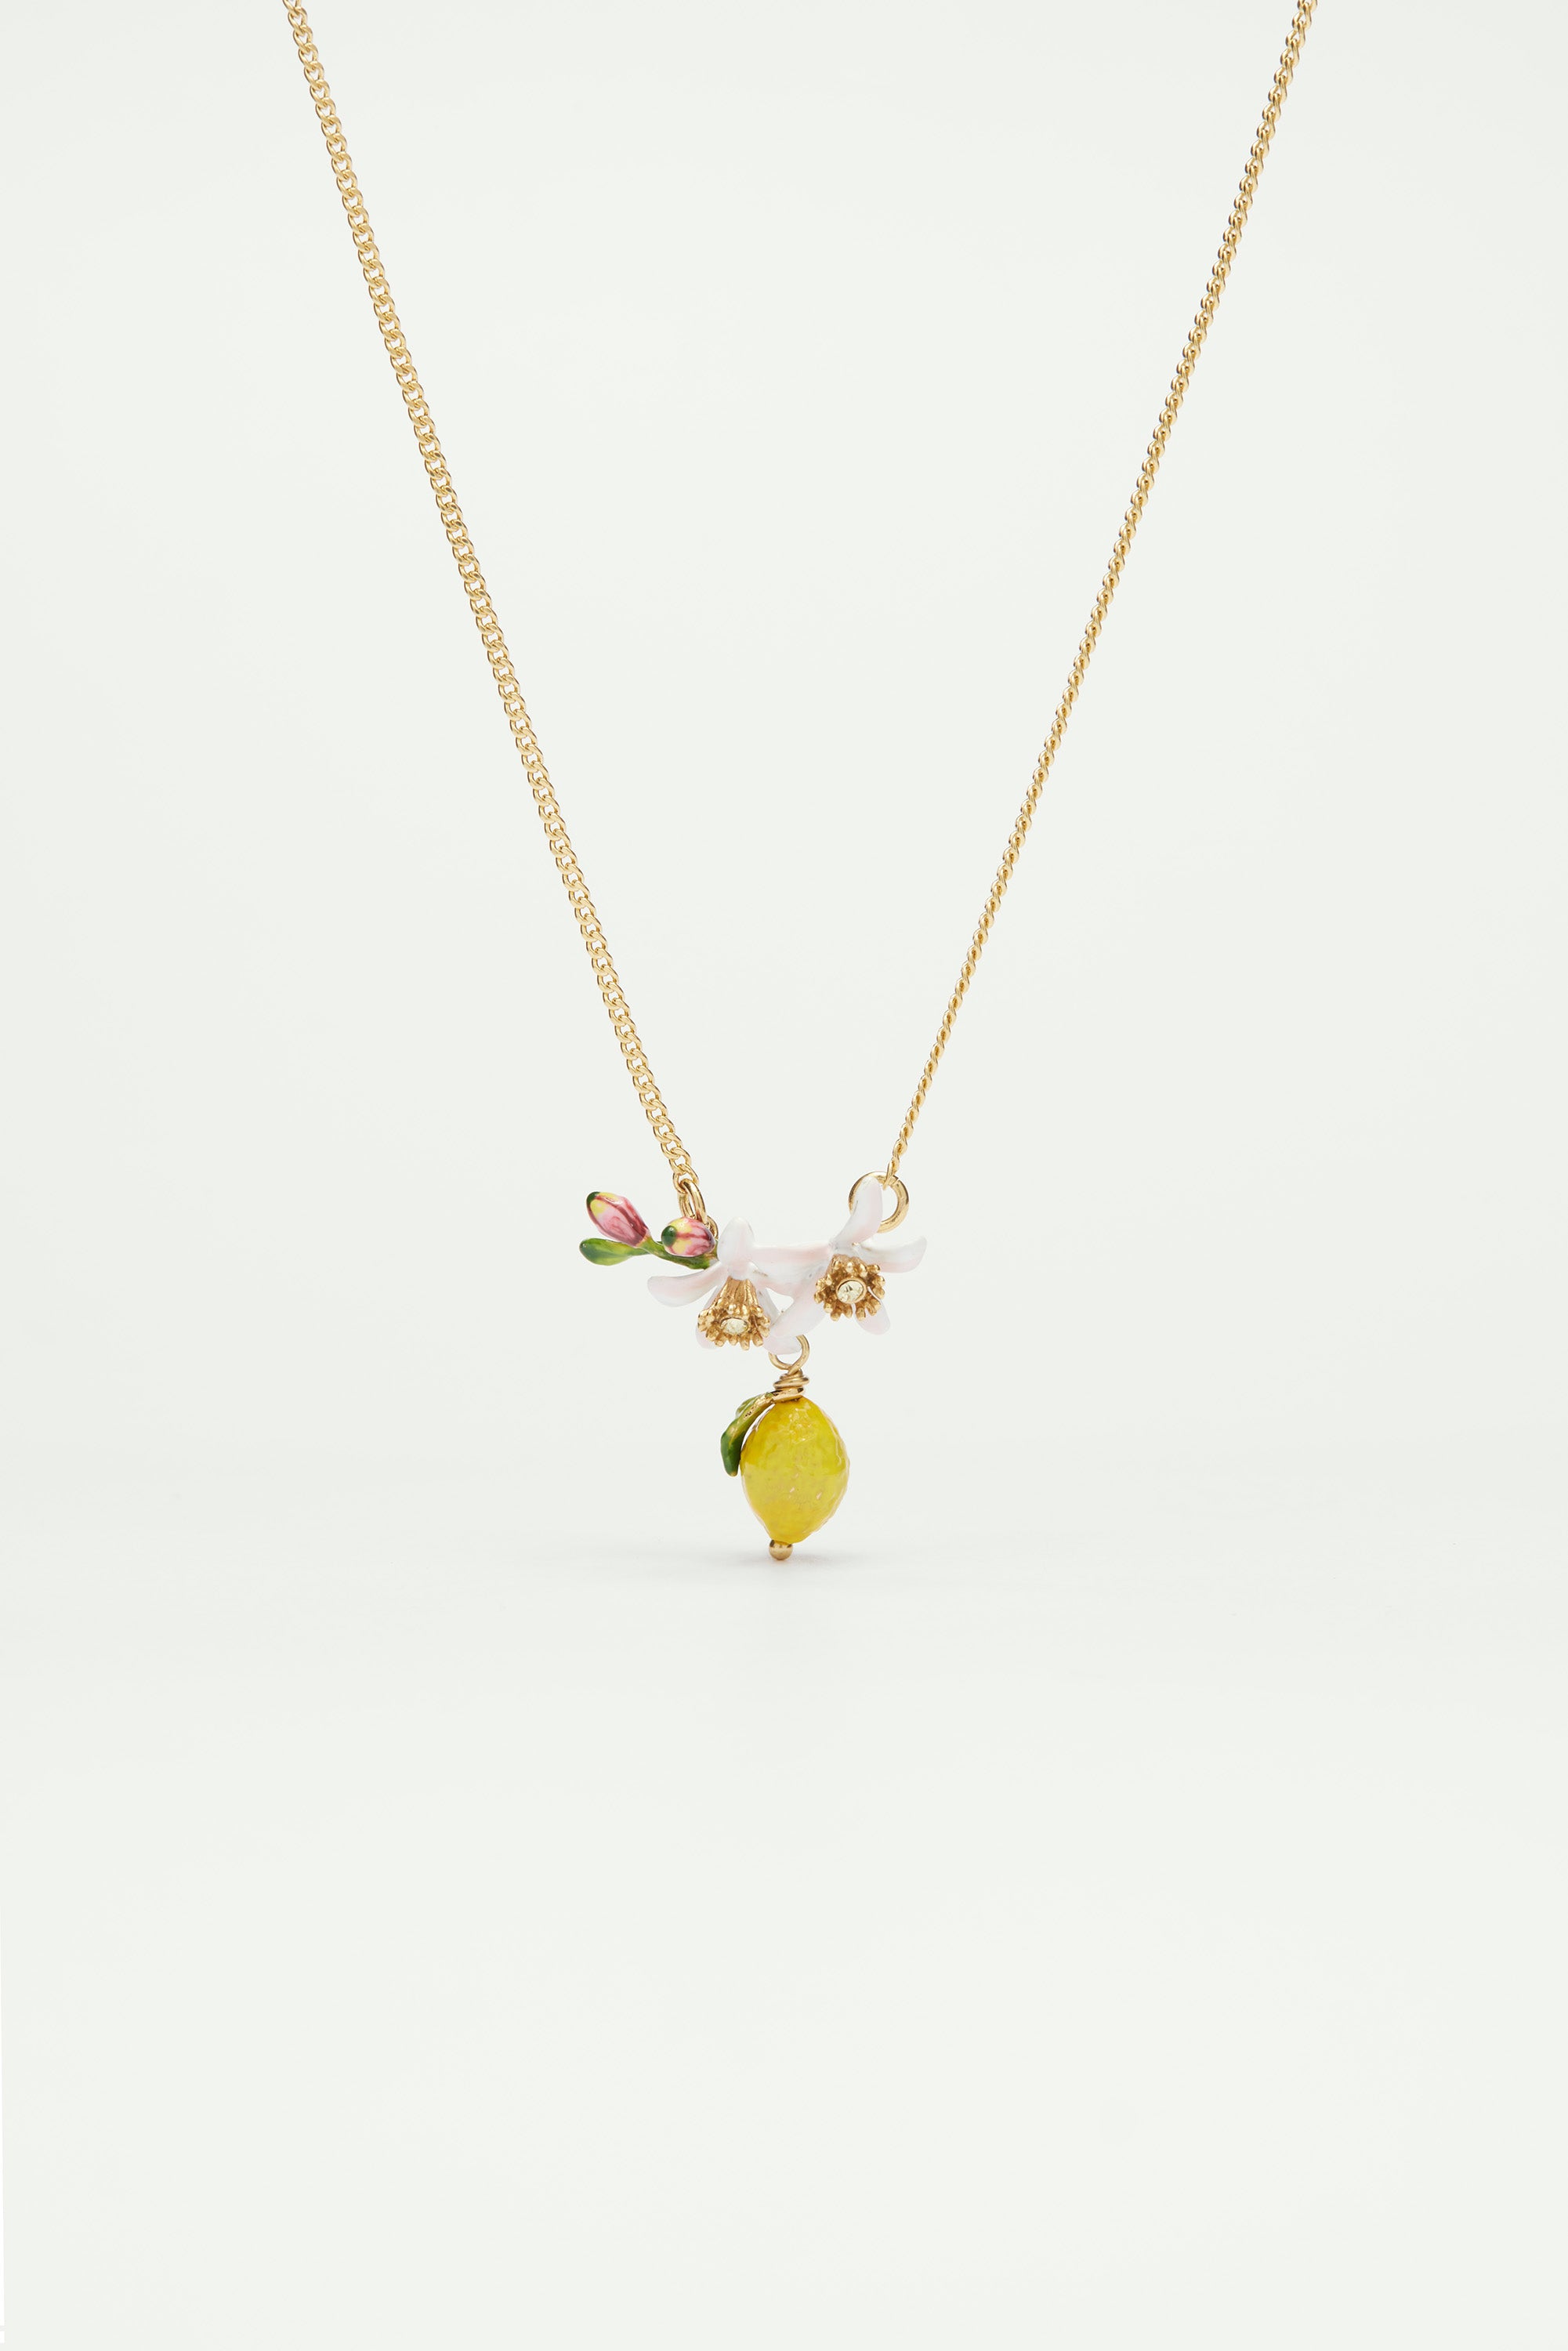 Lemon, flower bud and lemon blossom necklace